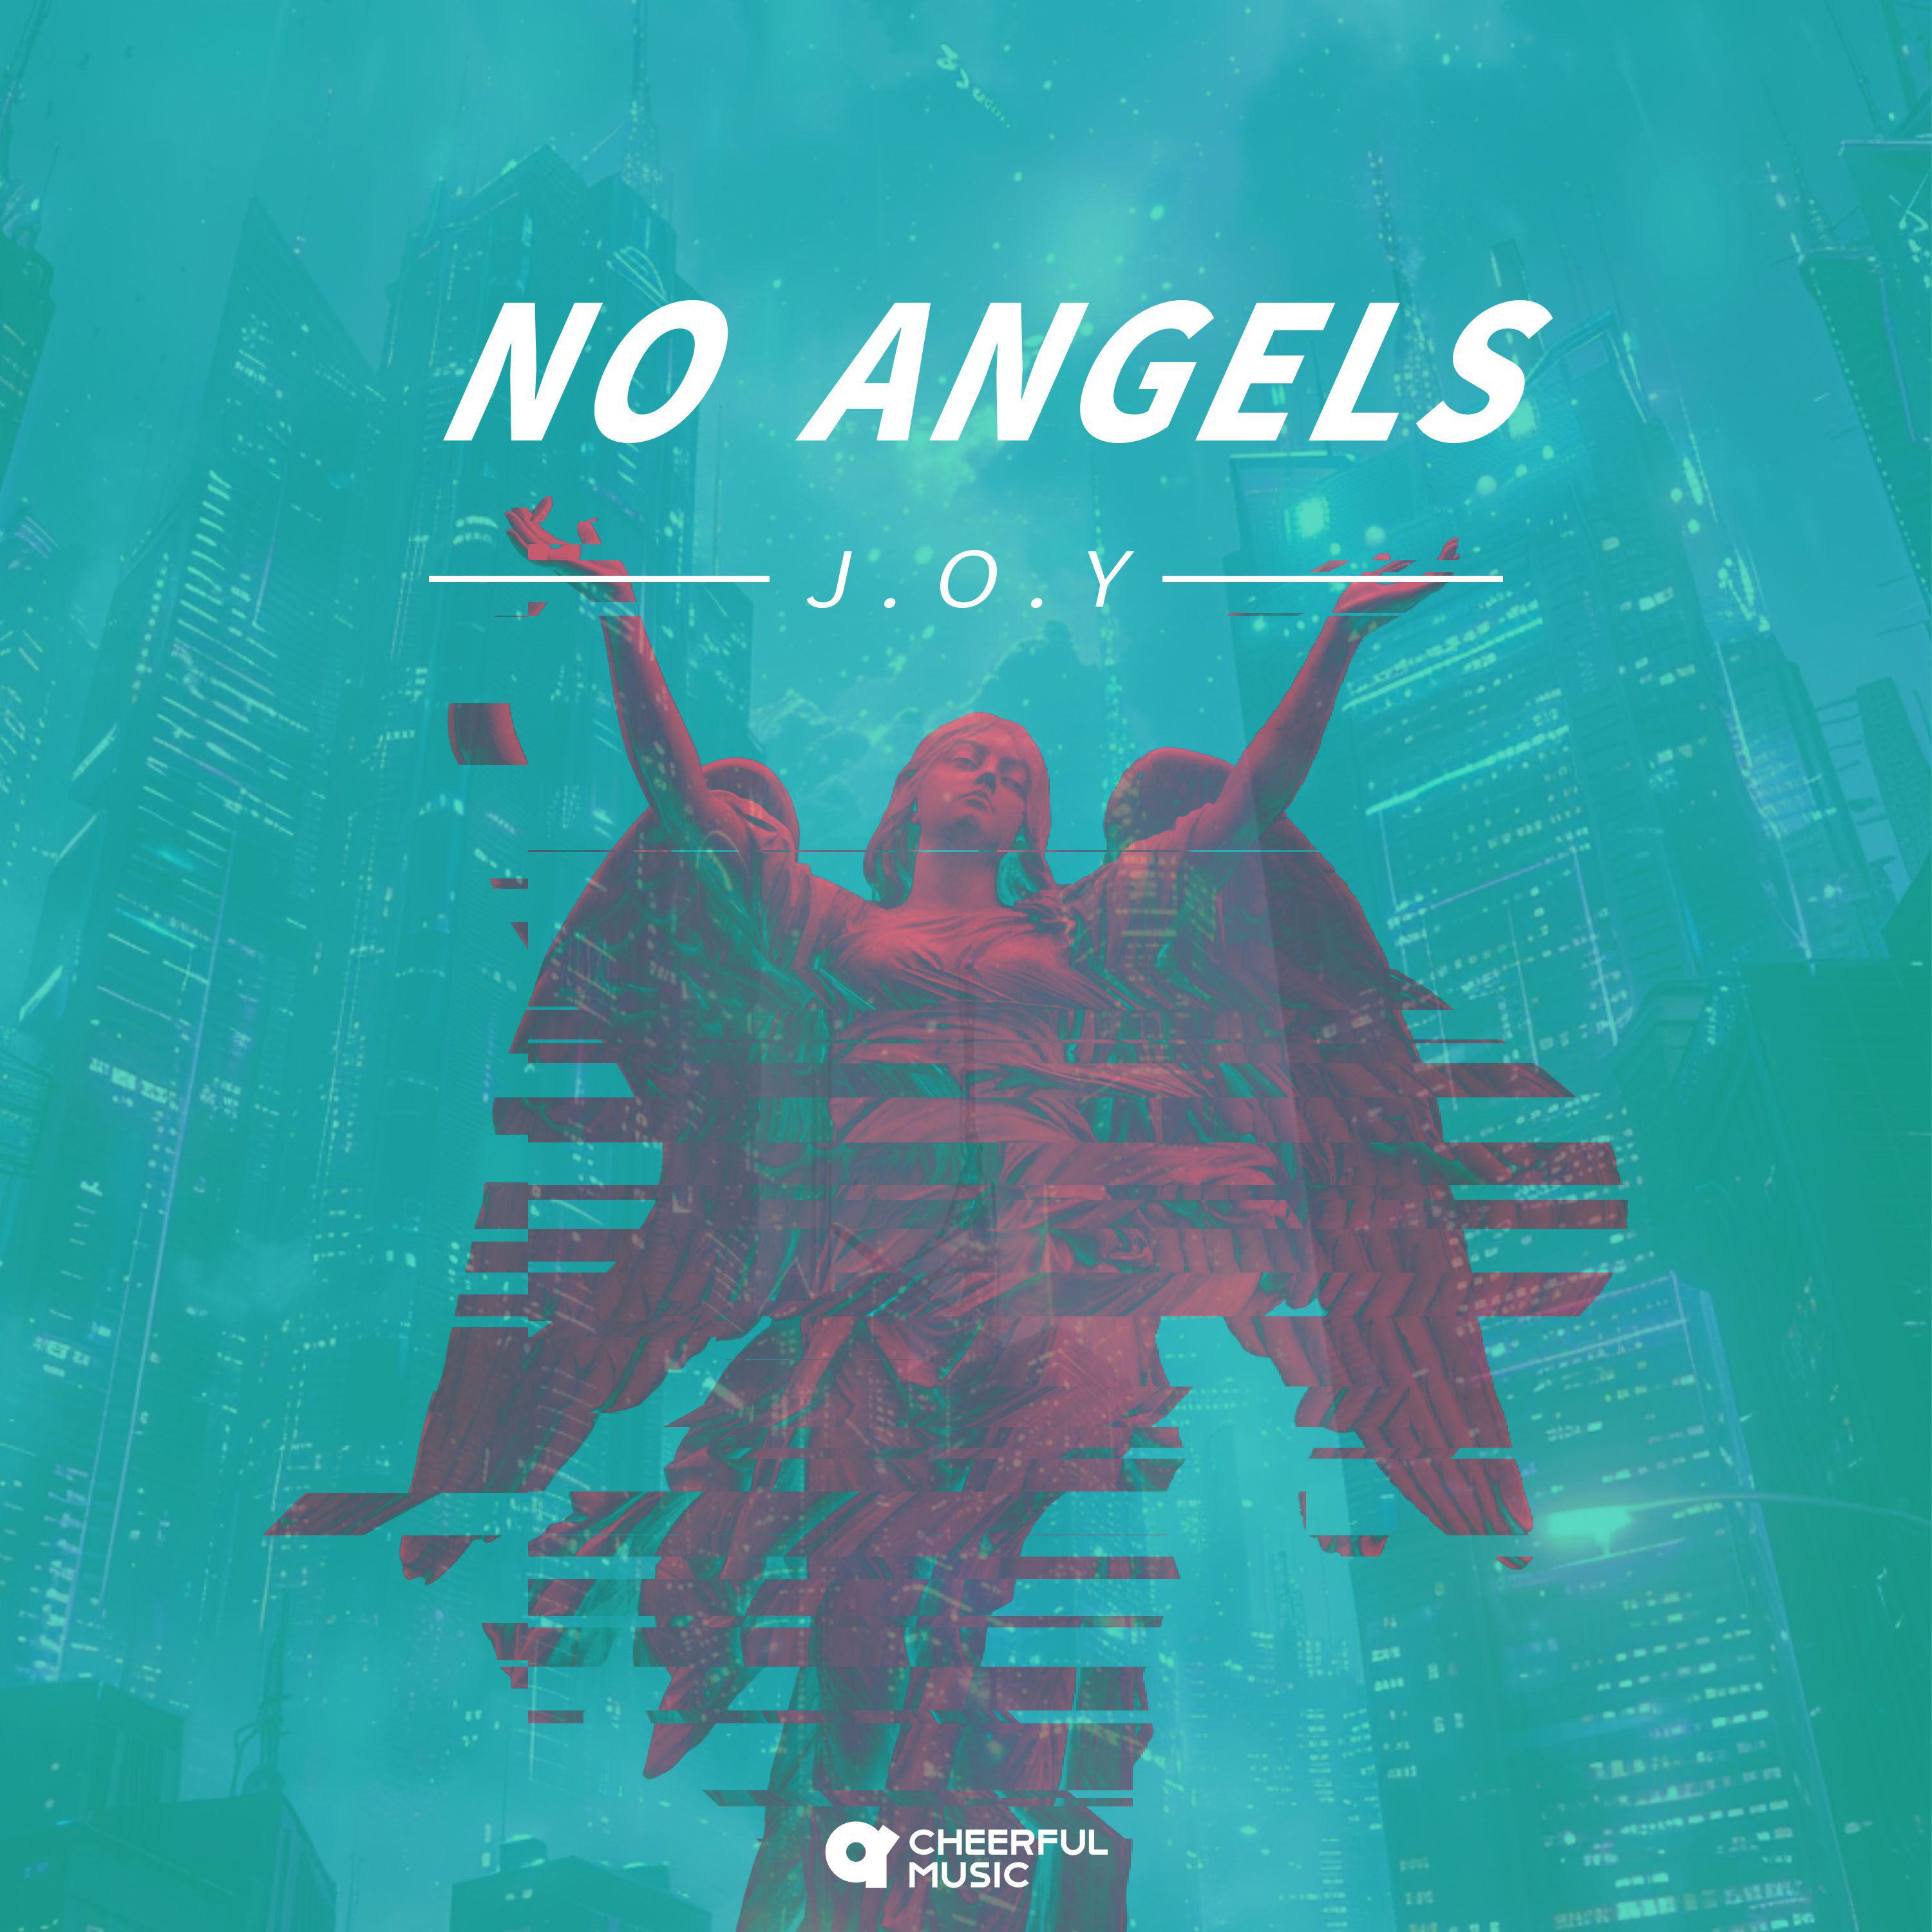 J.O.Y - No Angels